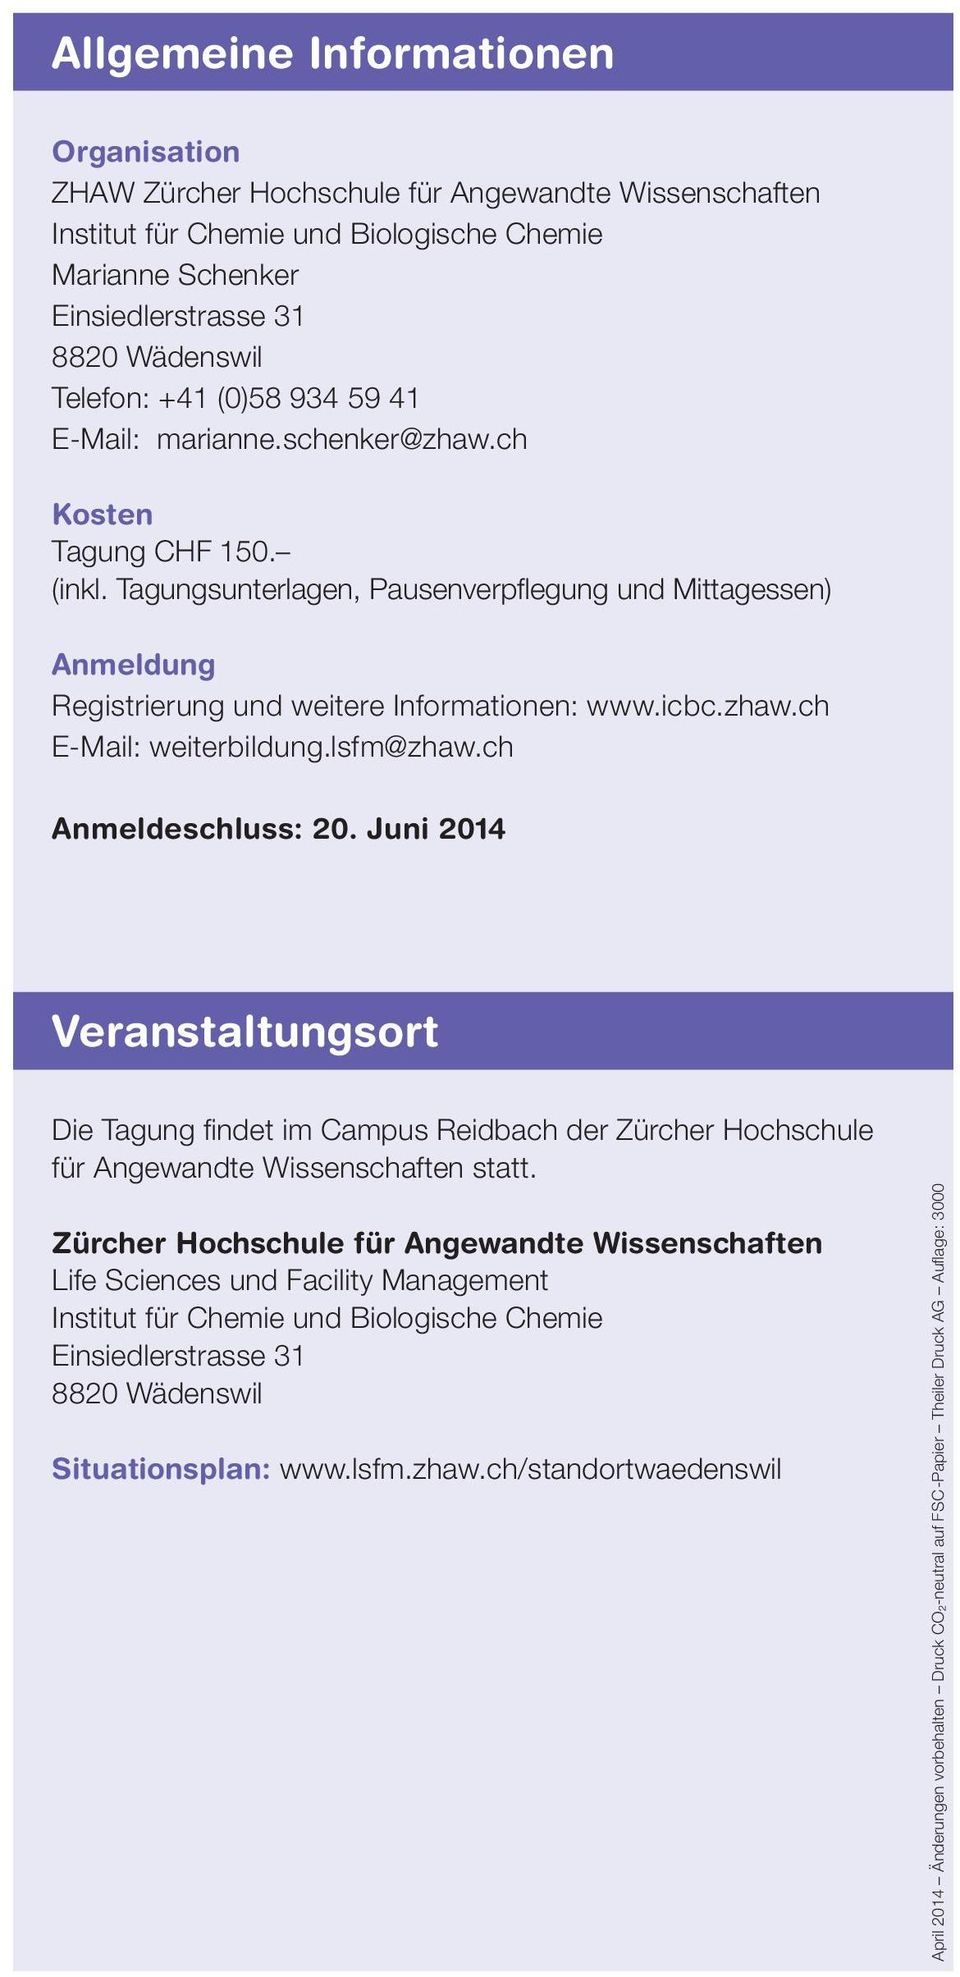 zhaw.ch E-Mail: weiterbildung.lsfm@zhaw.ch Anmeldeschluss: 20. Juni 2014 Veranstaltungsort Die Tagung findet im Campus Reidbach der Zürcher Hochschule für Angewandte Wissenschaften statt.